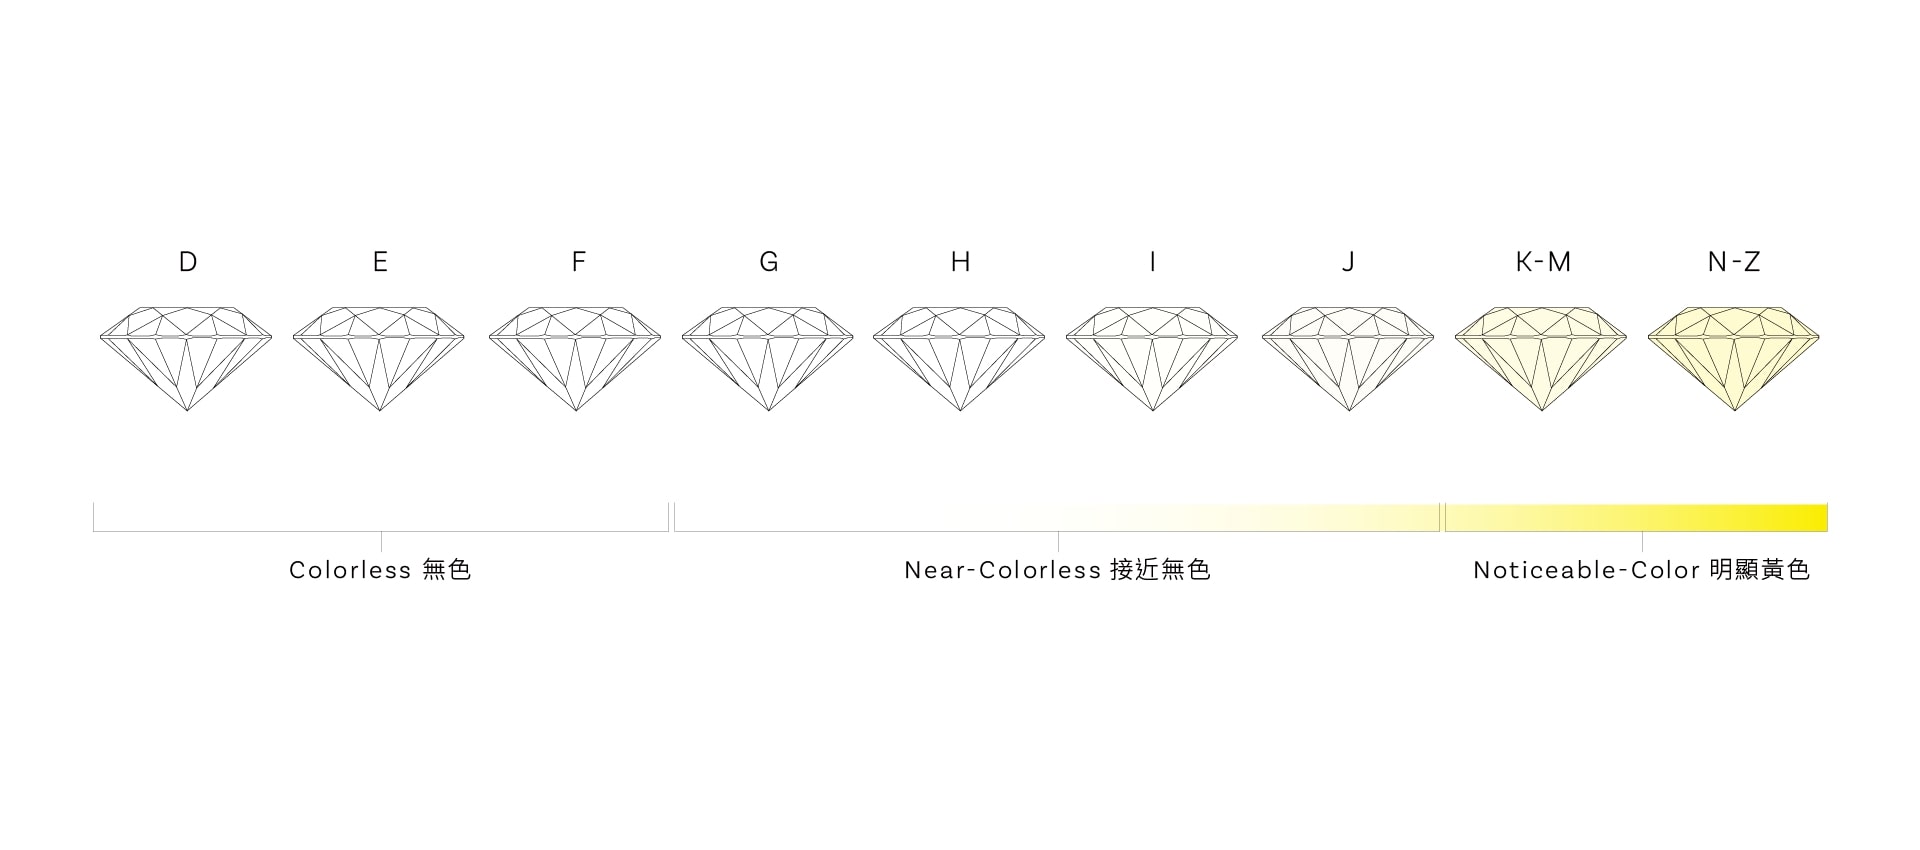 鑽石蘊含的4大元素『成色 Color』